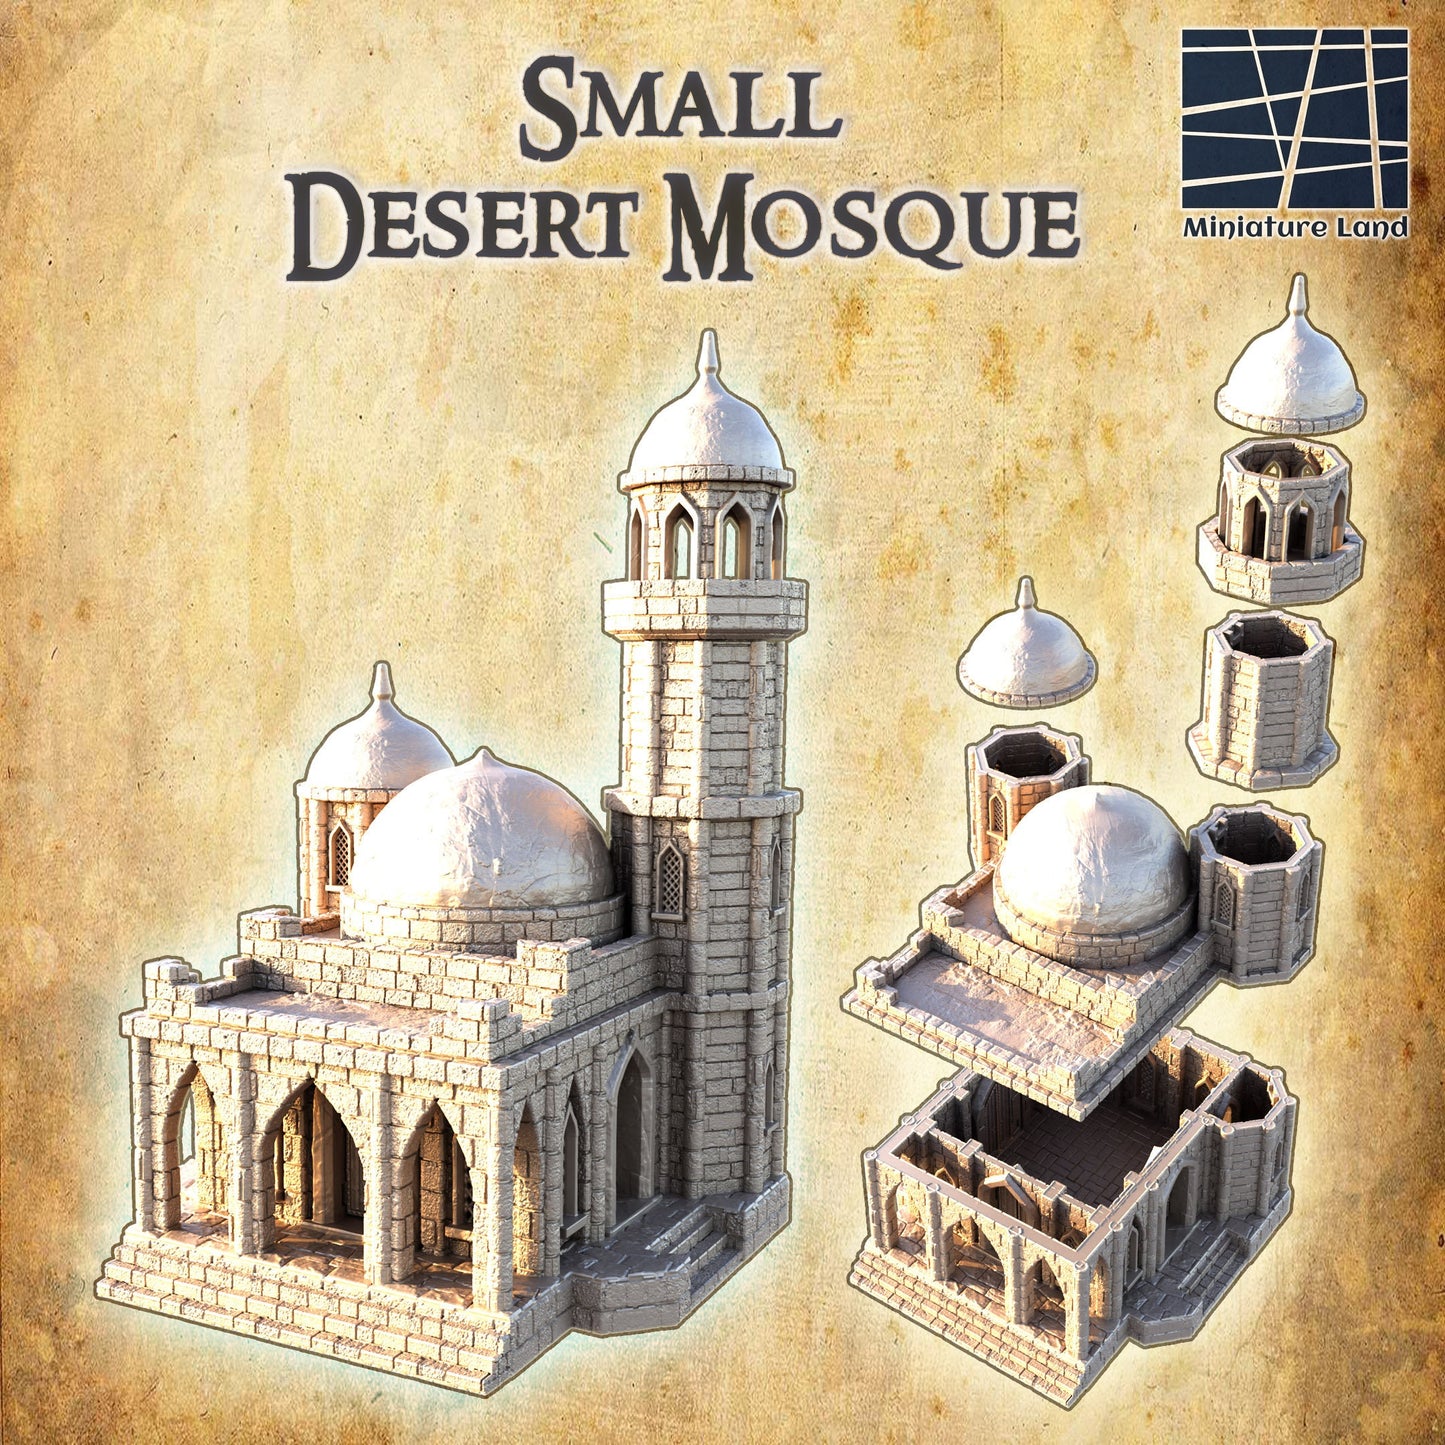 Small Desert Mosque, Mosque, Desert Terrain